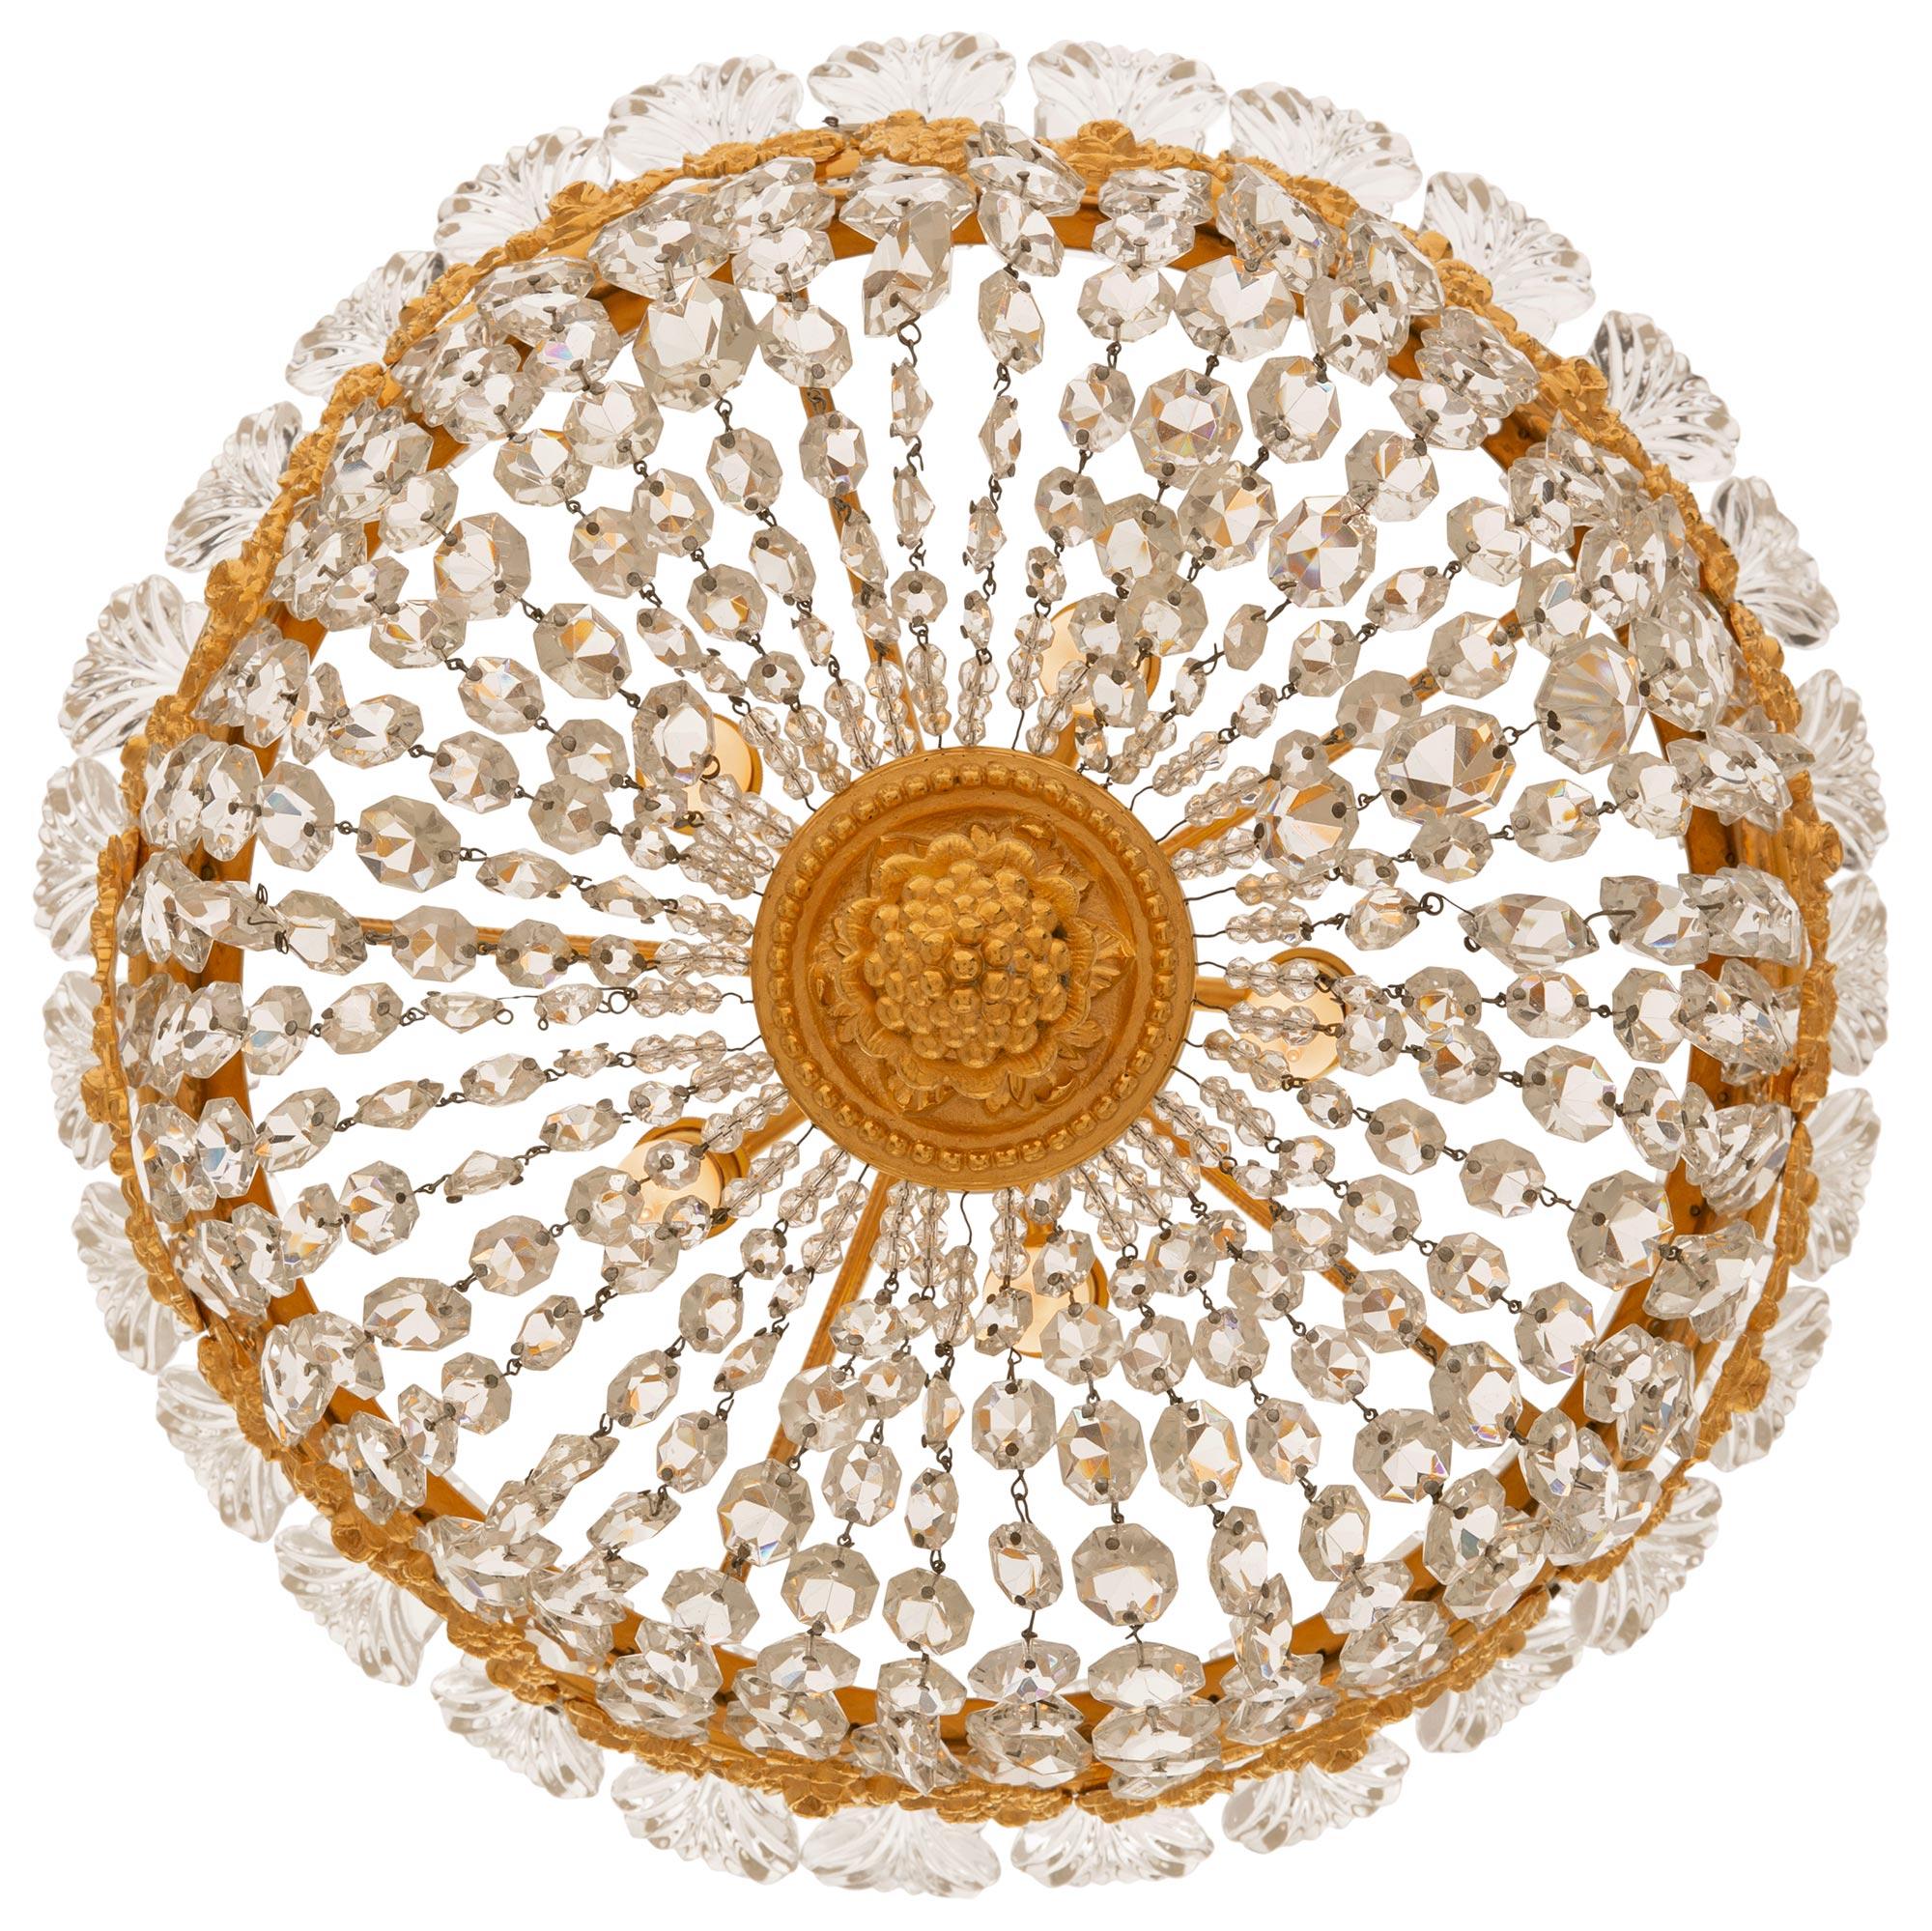 Ravissant et très élégant lustre plafonnier en bronze doré et cristal de style Louis XVI du XIXe siècle. Le plafonnier circulaire à cinq lumières est centré par un charmant fleuron à baies sous un étage en bronze doré tacheté d'où partent de